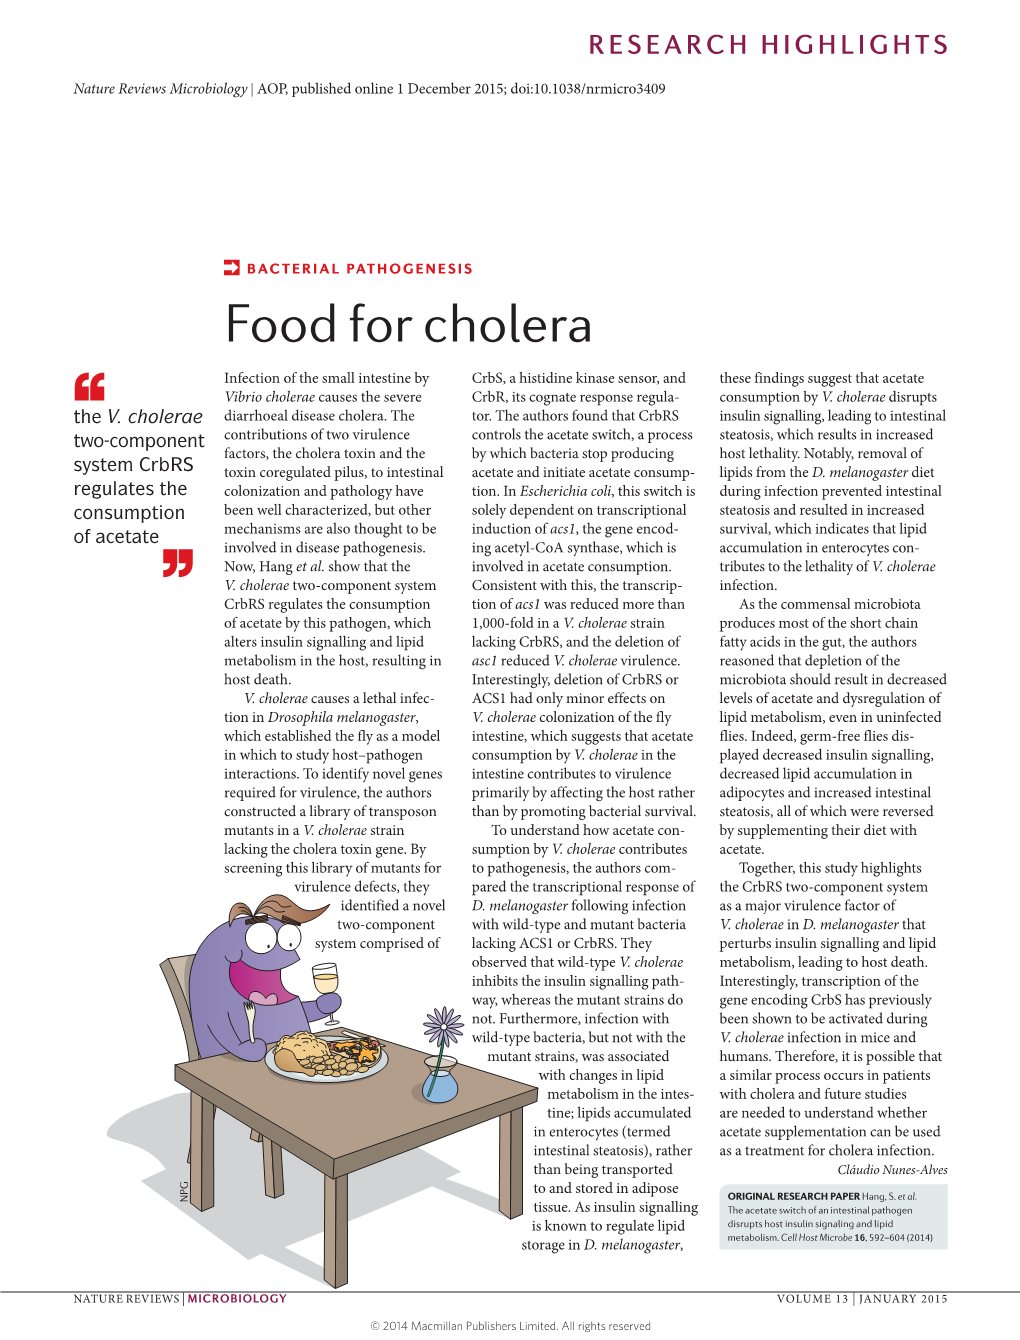 Bacterial Pathogenesis: Food for Cholera